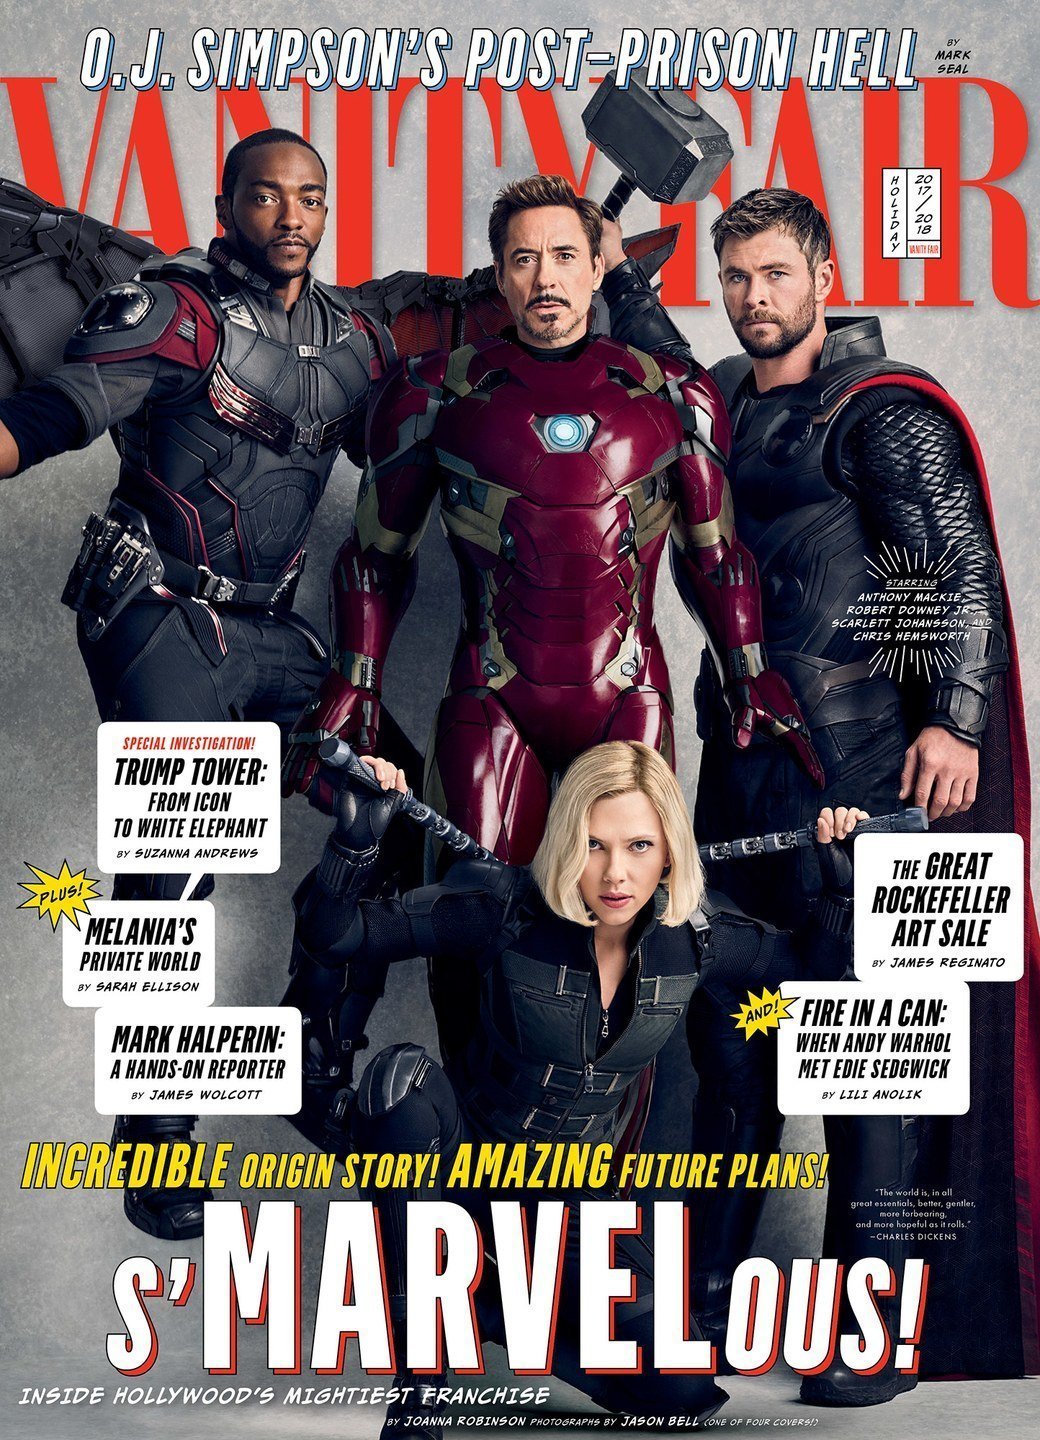 Couverture de Vanity Fair avec Falcon, Iron Man, Thor et Black Widow